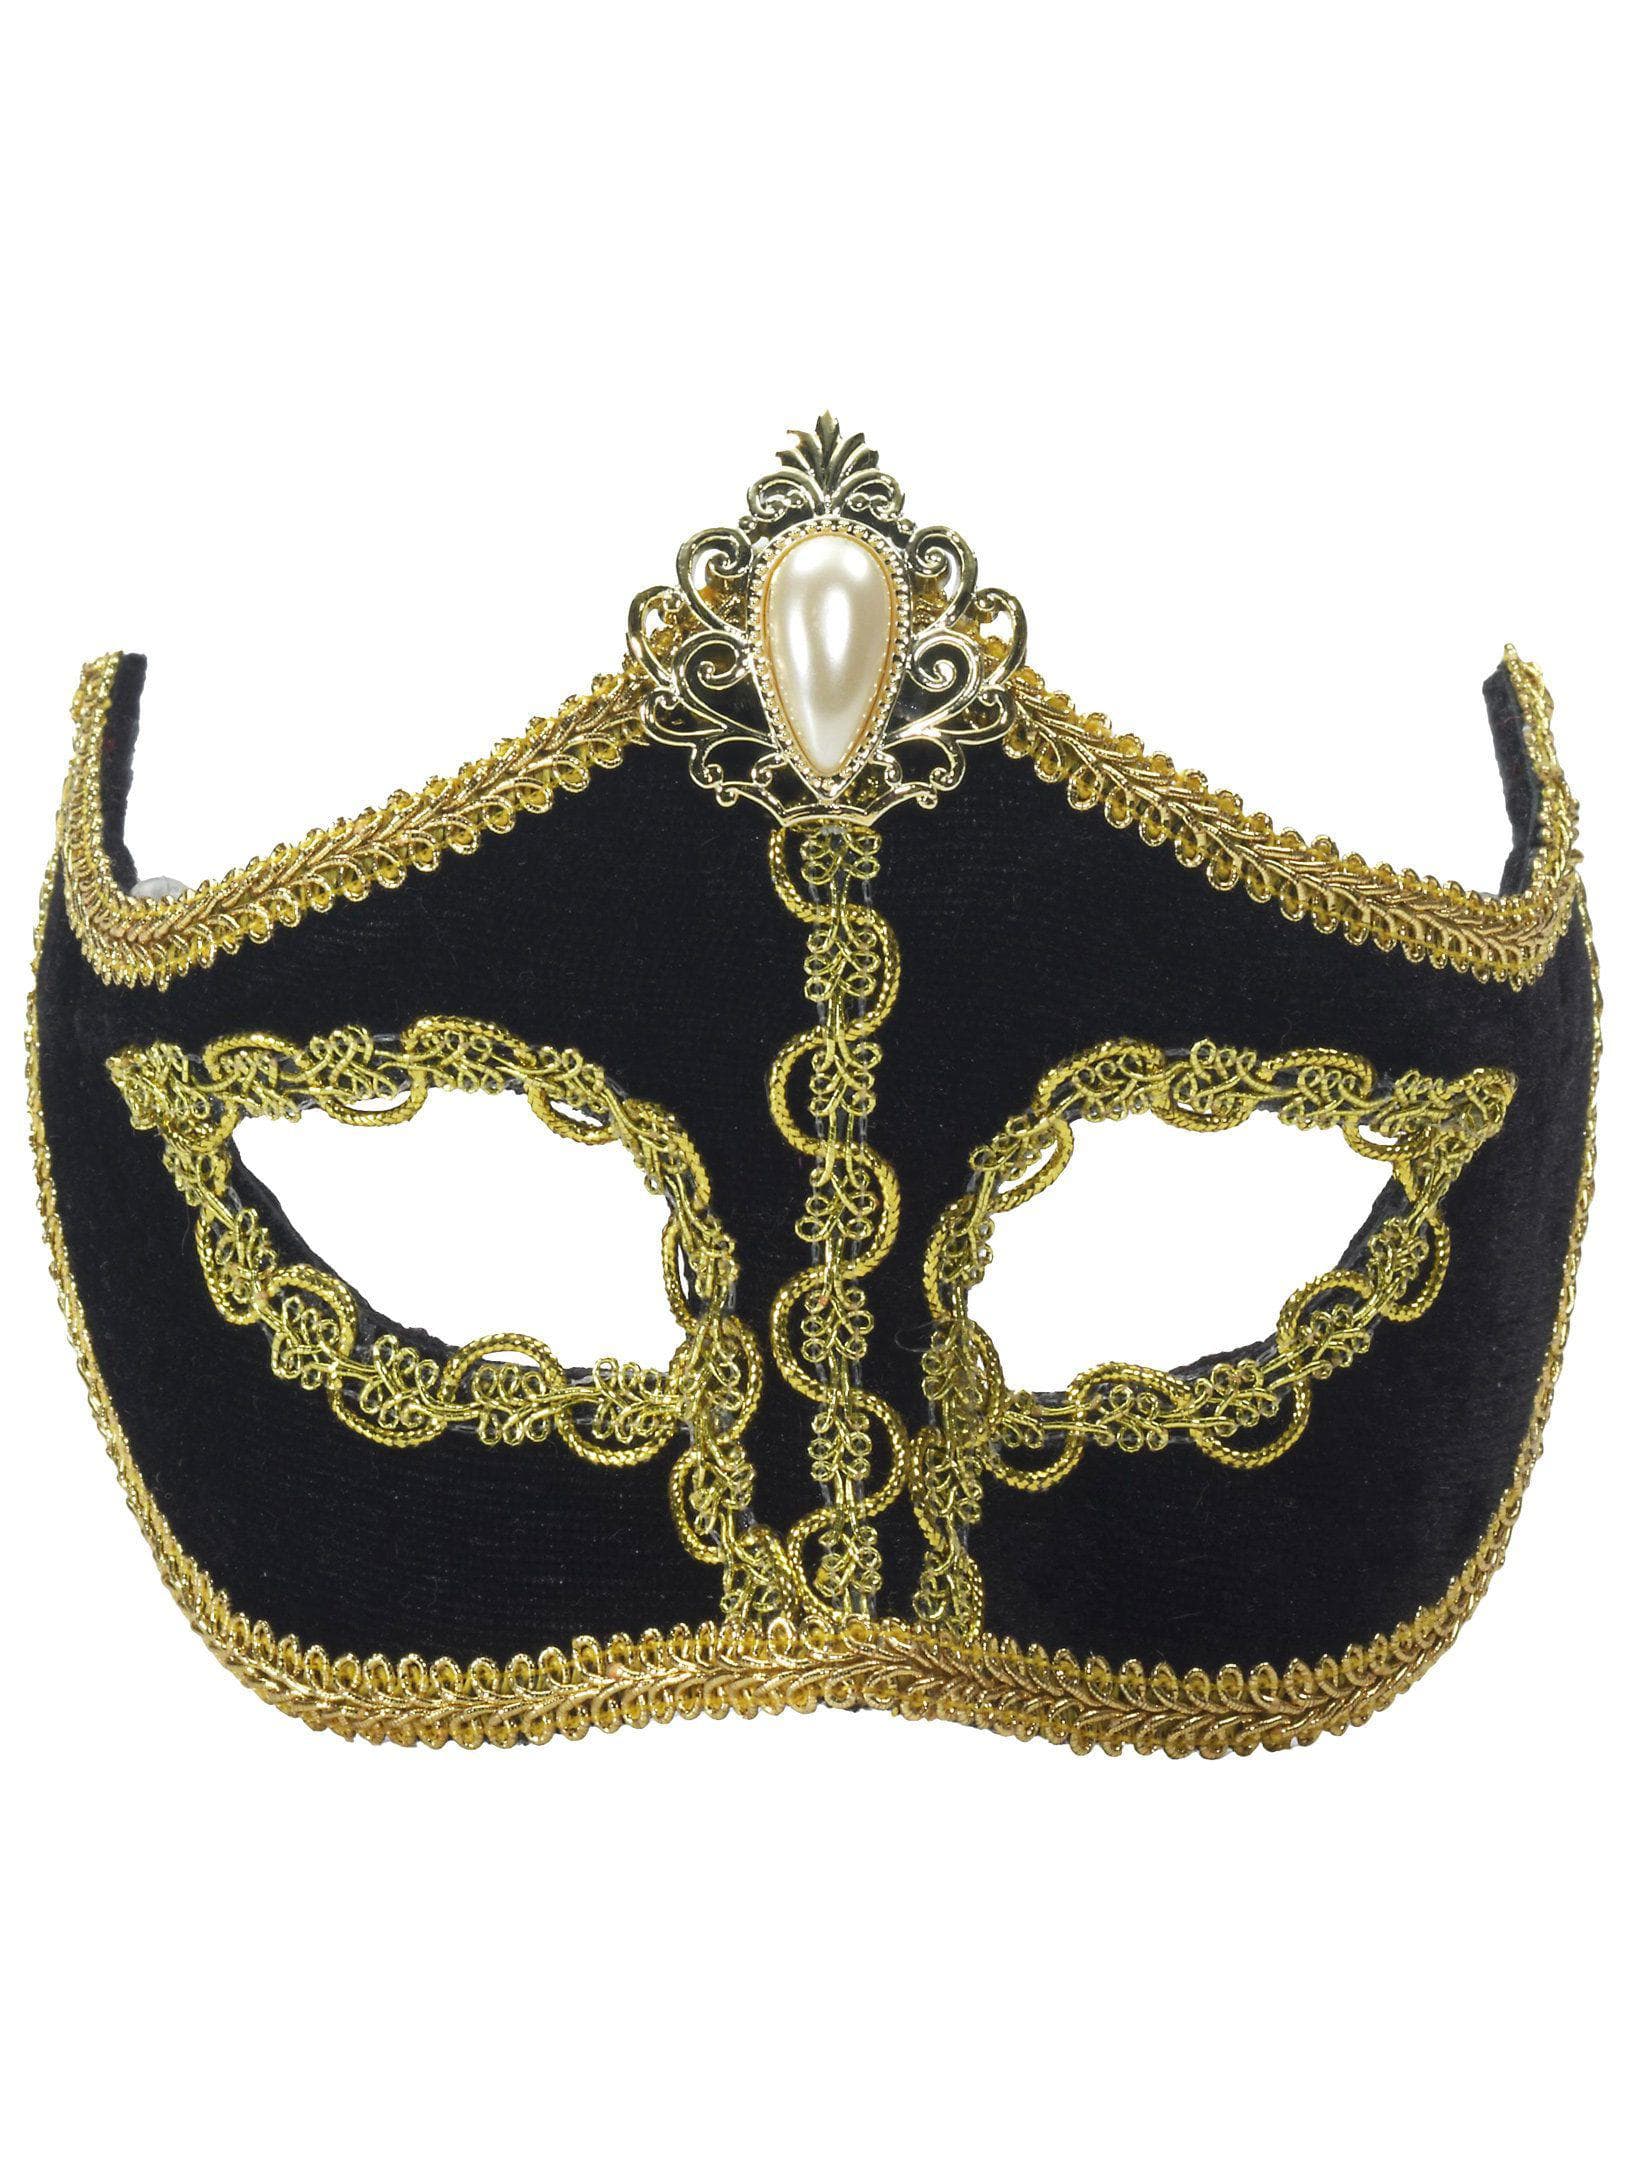 Velvet Black Venetian Mask - costumes.com